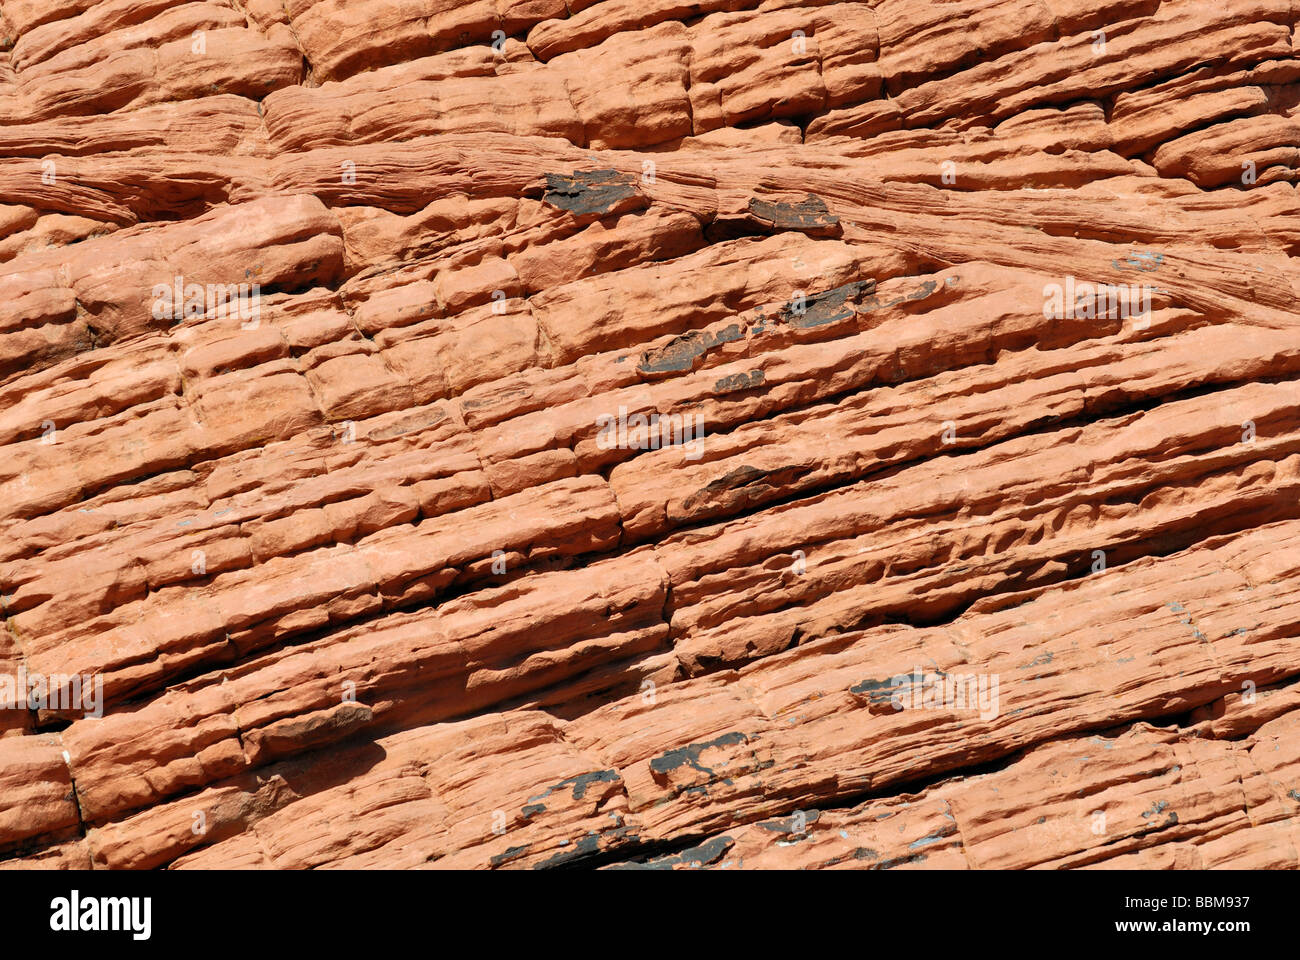 Struttura in pietra arenaria dell'alveare formazione di roccia, la Valle del Fuoco del parco statale, Nevada, STATI UNITI D'AMERICA Foto Stock